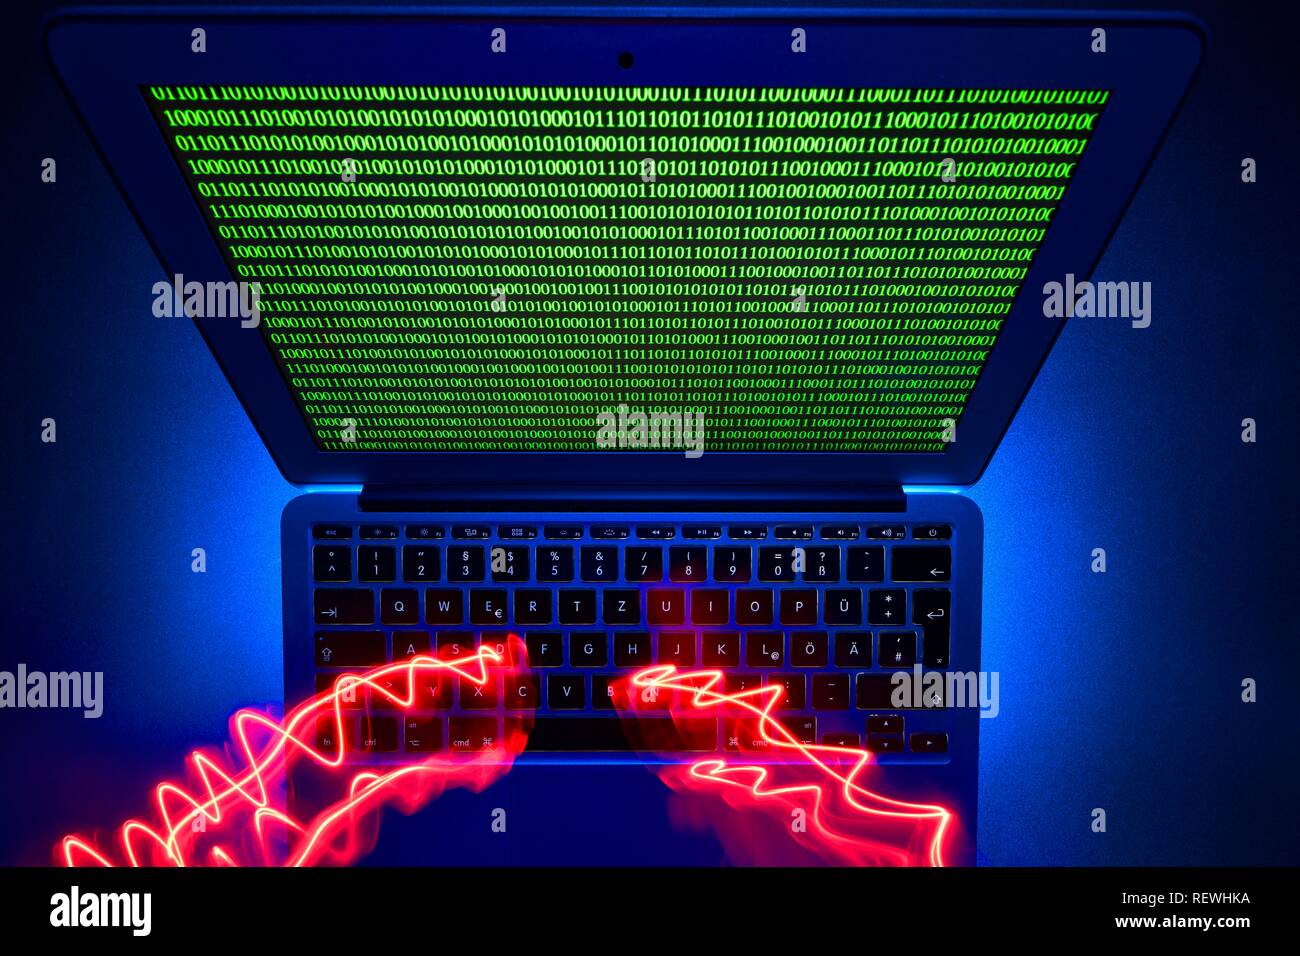 Traces de lumière sur le clavier de l'ordinateur, l'image symbole de la cybercriminalité, la criminalité informatique, la protection des données, Bade-Wurtemberg, Allemagne Banque D'Images